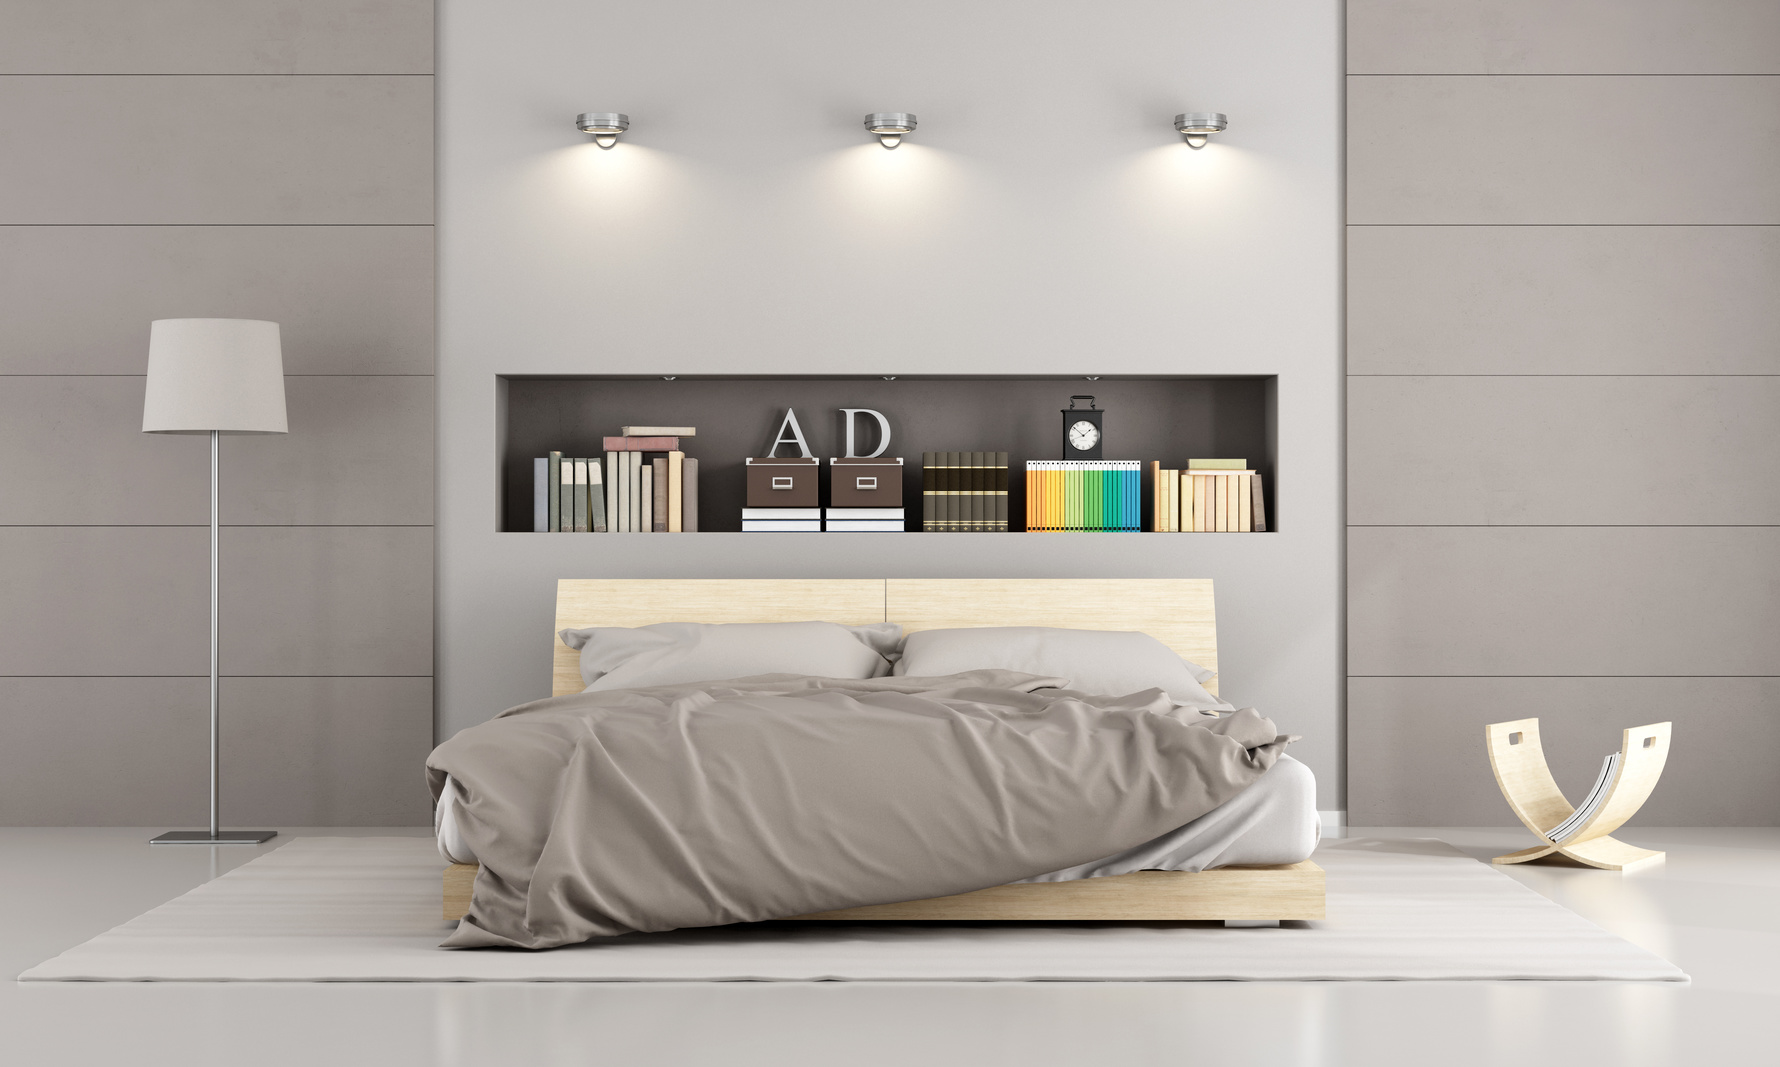 Modern Bedroom Wall: Inspiring A Fresh Start